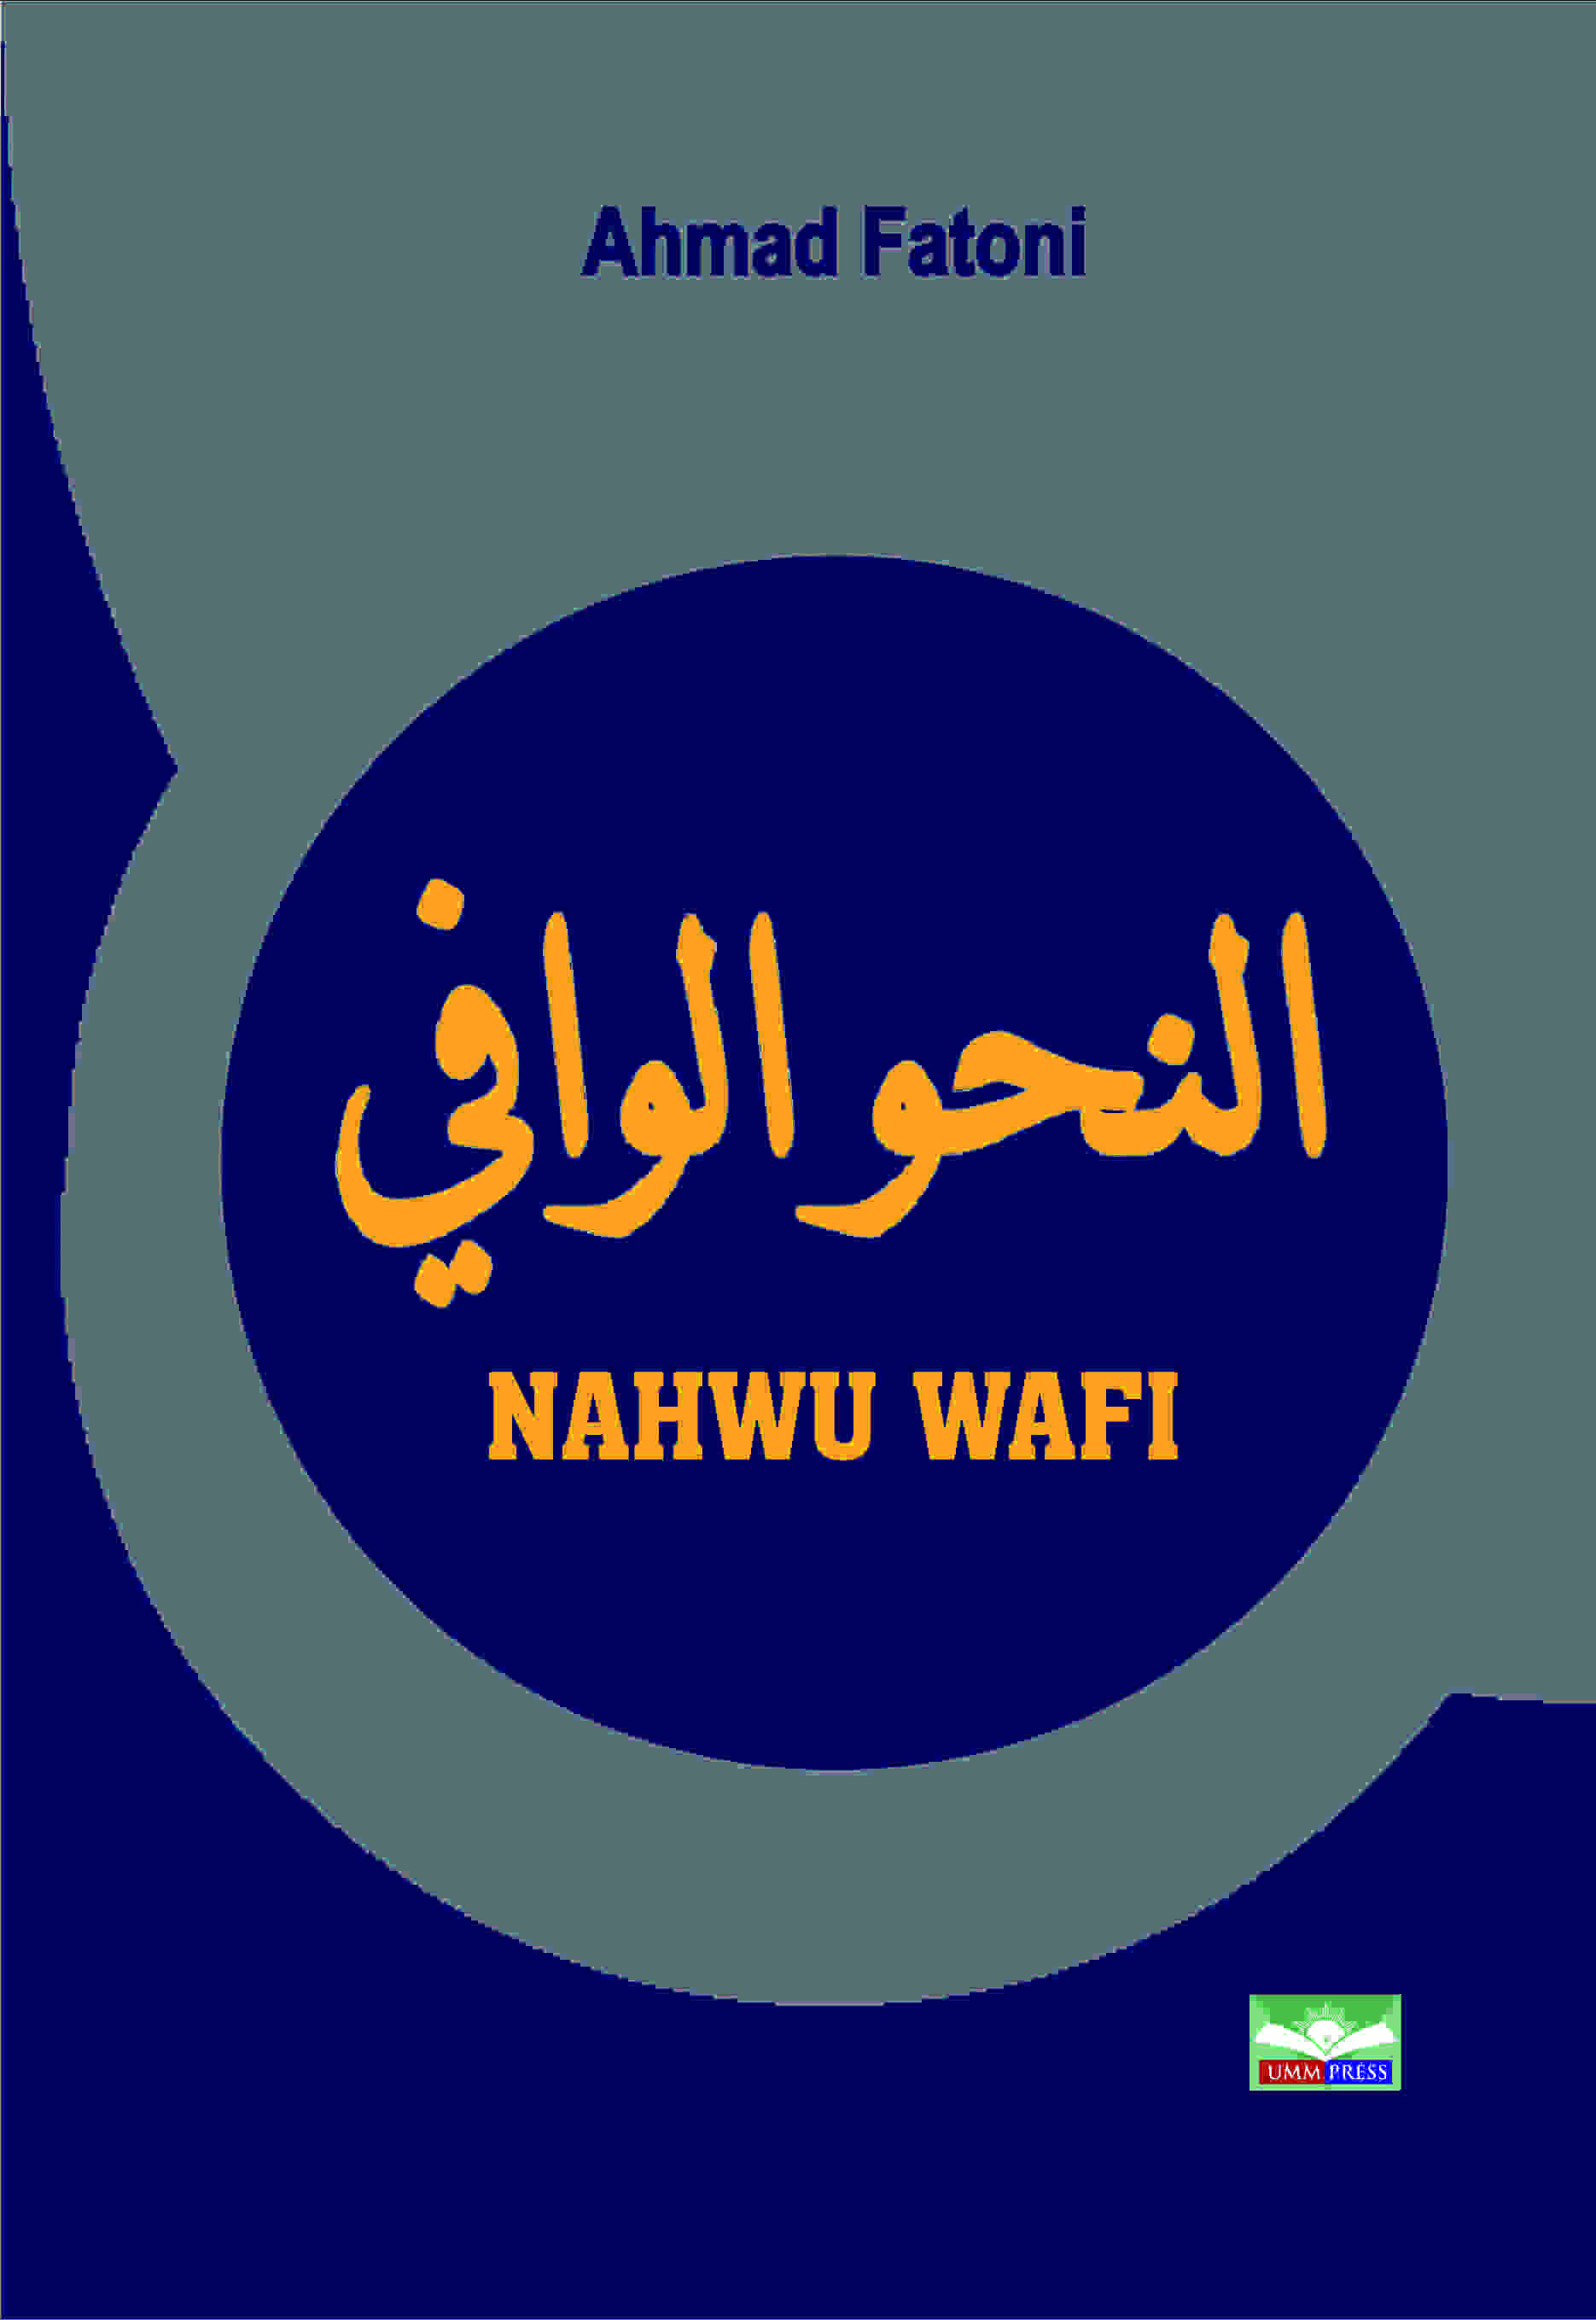 NAHWU WAFI